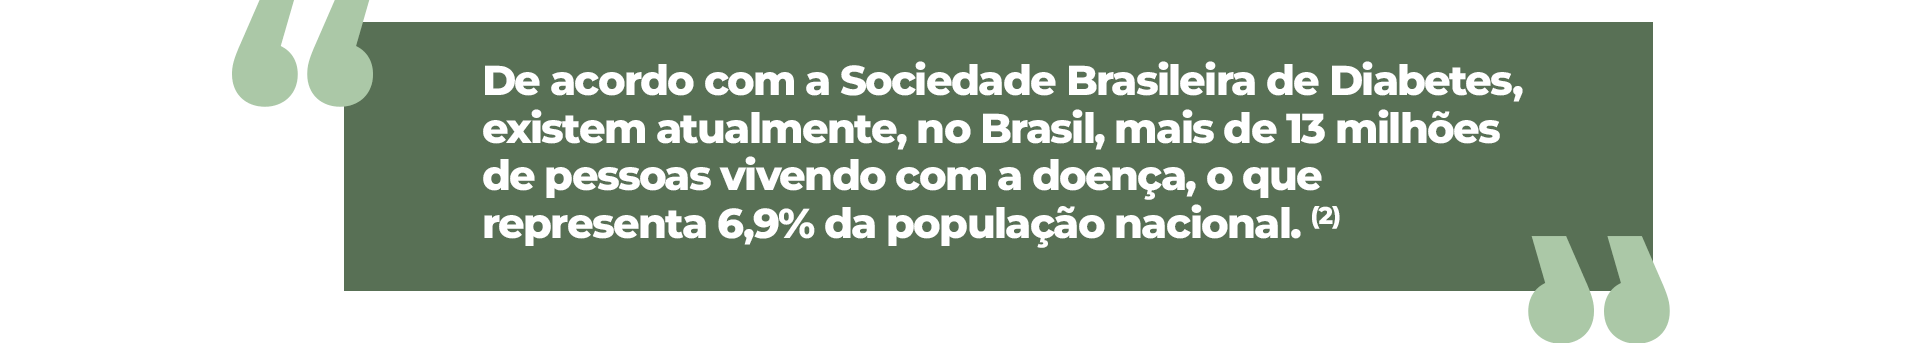 De acordo com a Sociedade Brasileira de Diabetes, existem atualmente, no Brasil, mais de 13 milhões de pessoas vivendo com a doença, o que representa 6,9% da população nacional.”